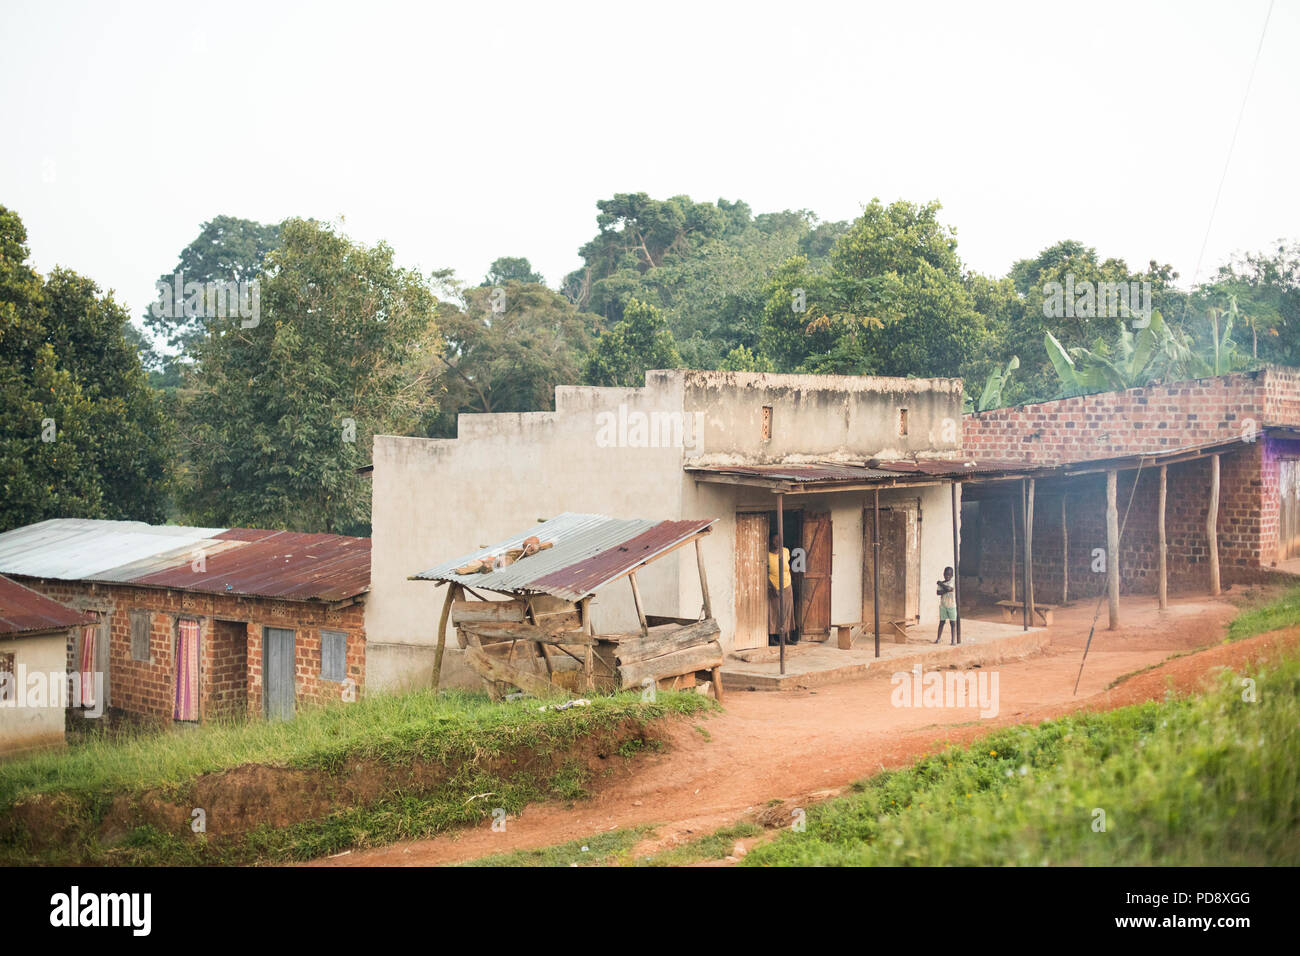 Geschäfte und Häuser säumen den Straßenrand von einer kleinen Stadt im ländlichen Bezirk Mukono, Uganda. Stockfoto